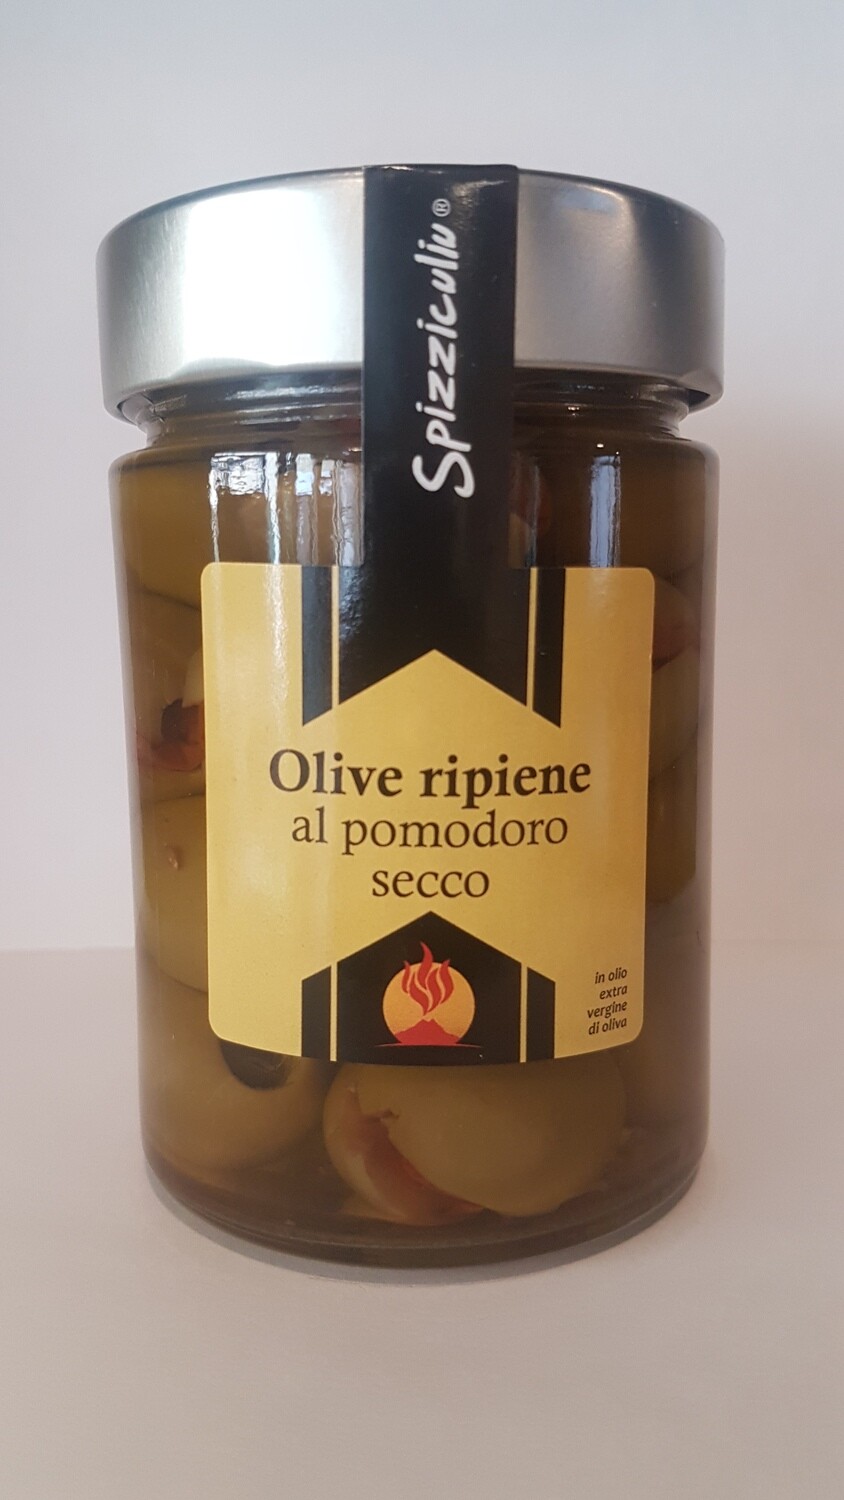 Olive ripiene al pomodoro secco